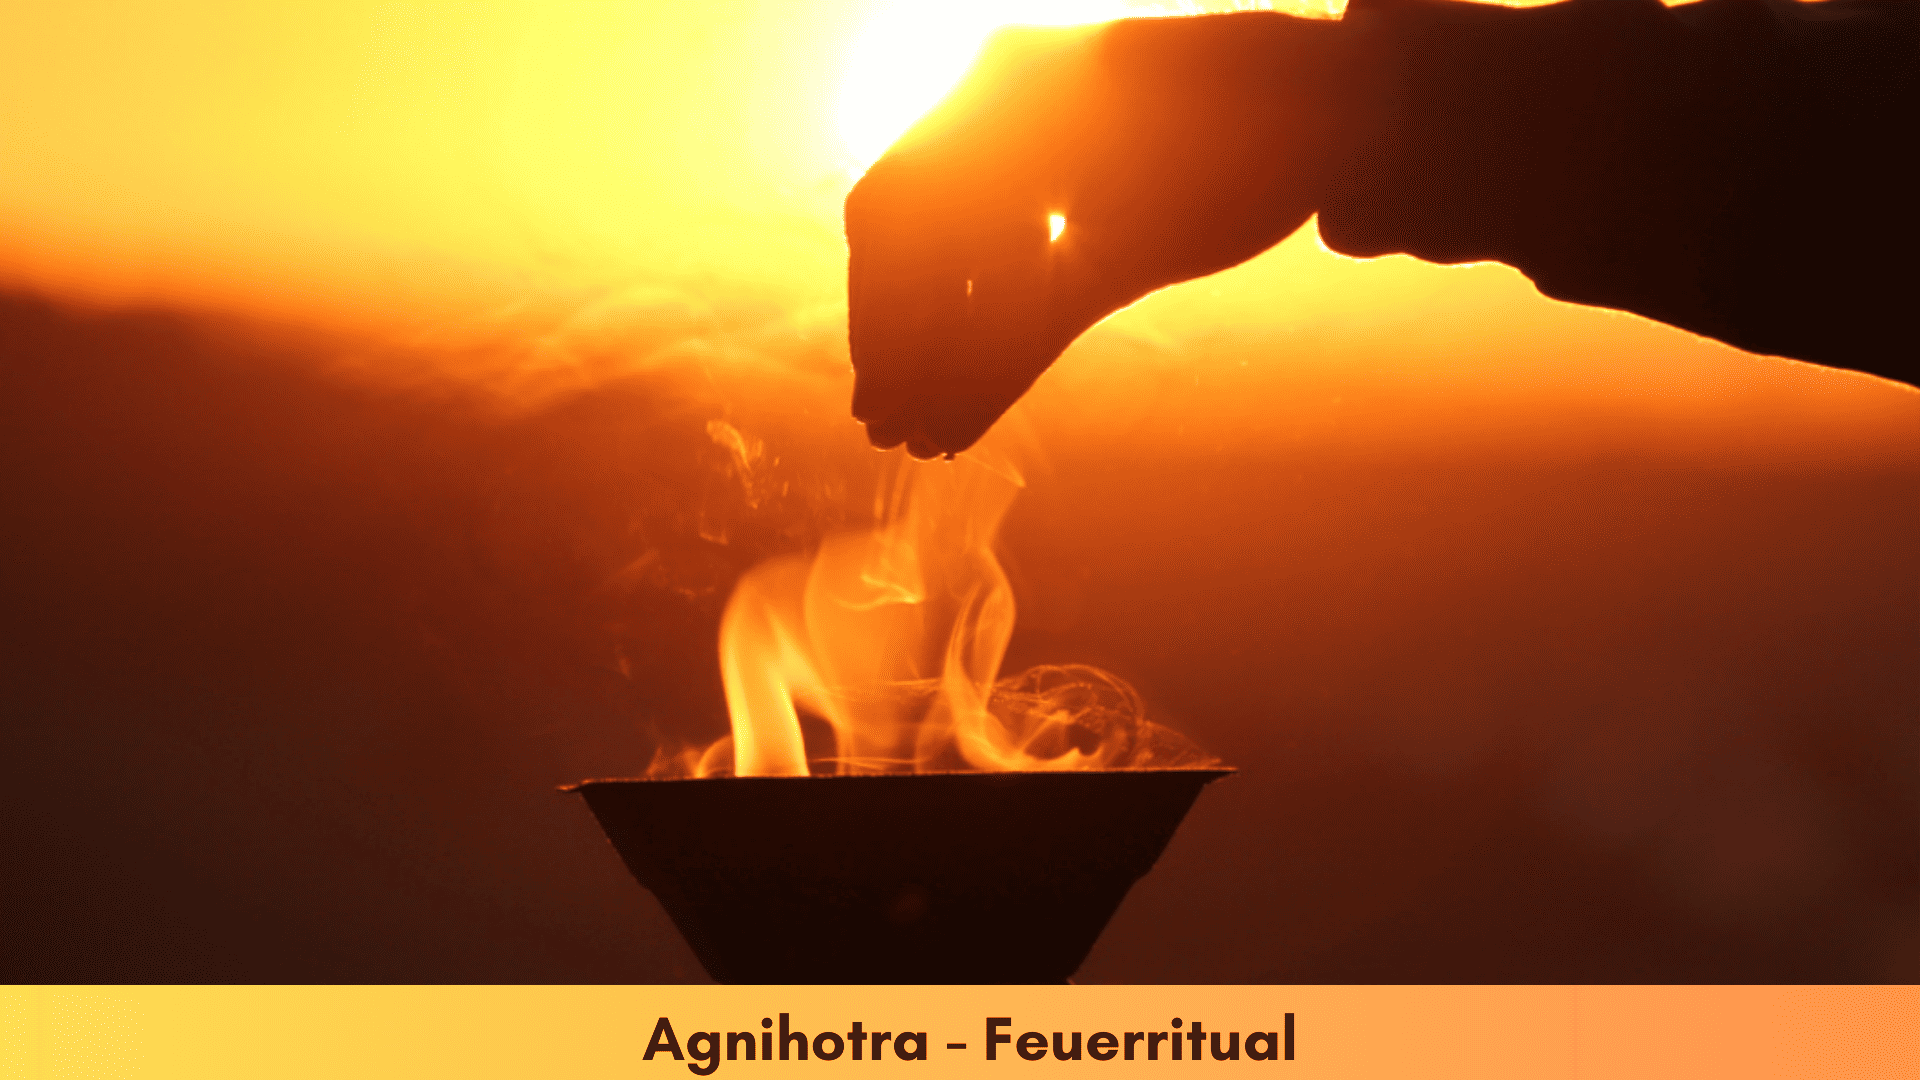 eine Agnihotra-Feuerschale bei Sonnenaufgang mit brennendem Feuer und eine Hand streut Reis darüber